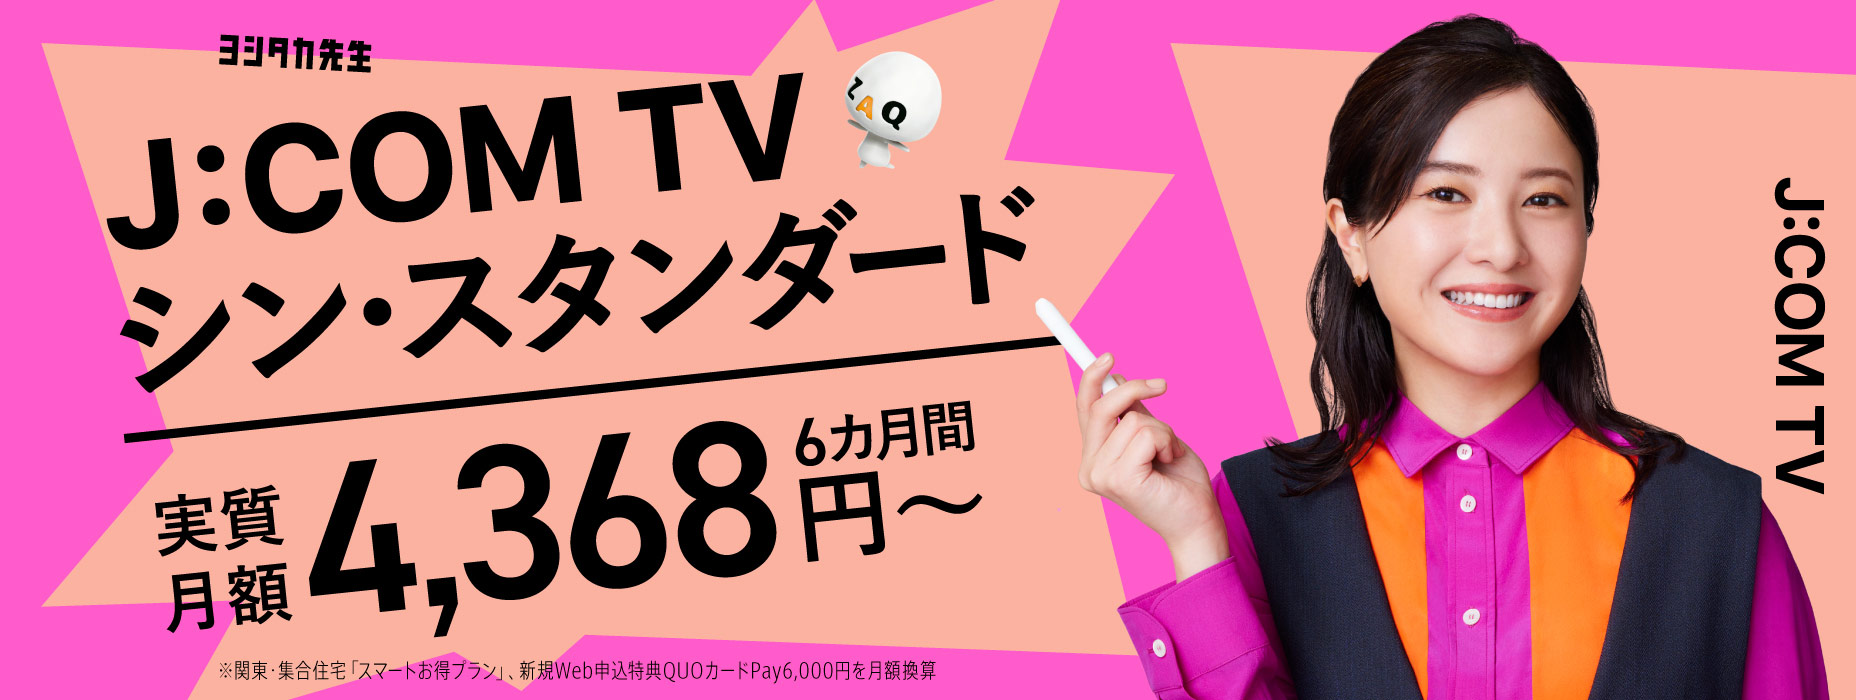 Price (J:COM TV Shin Standard)